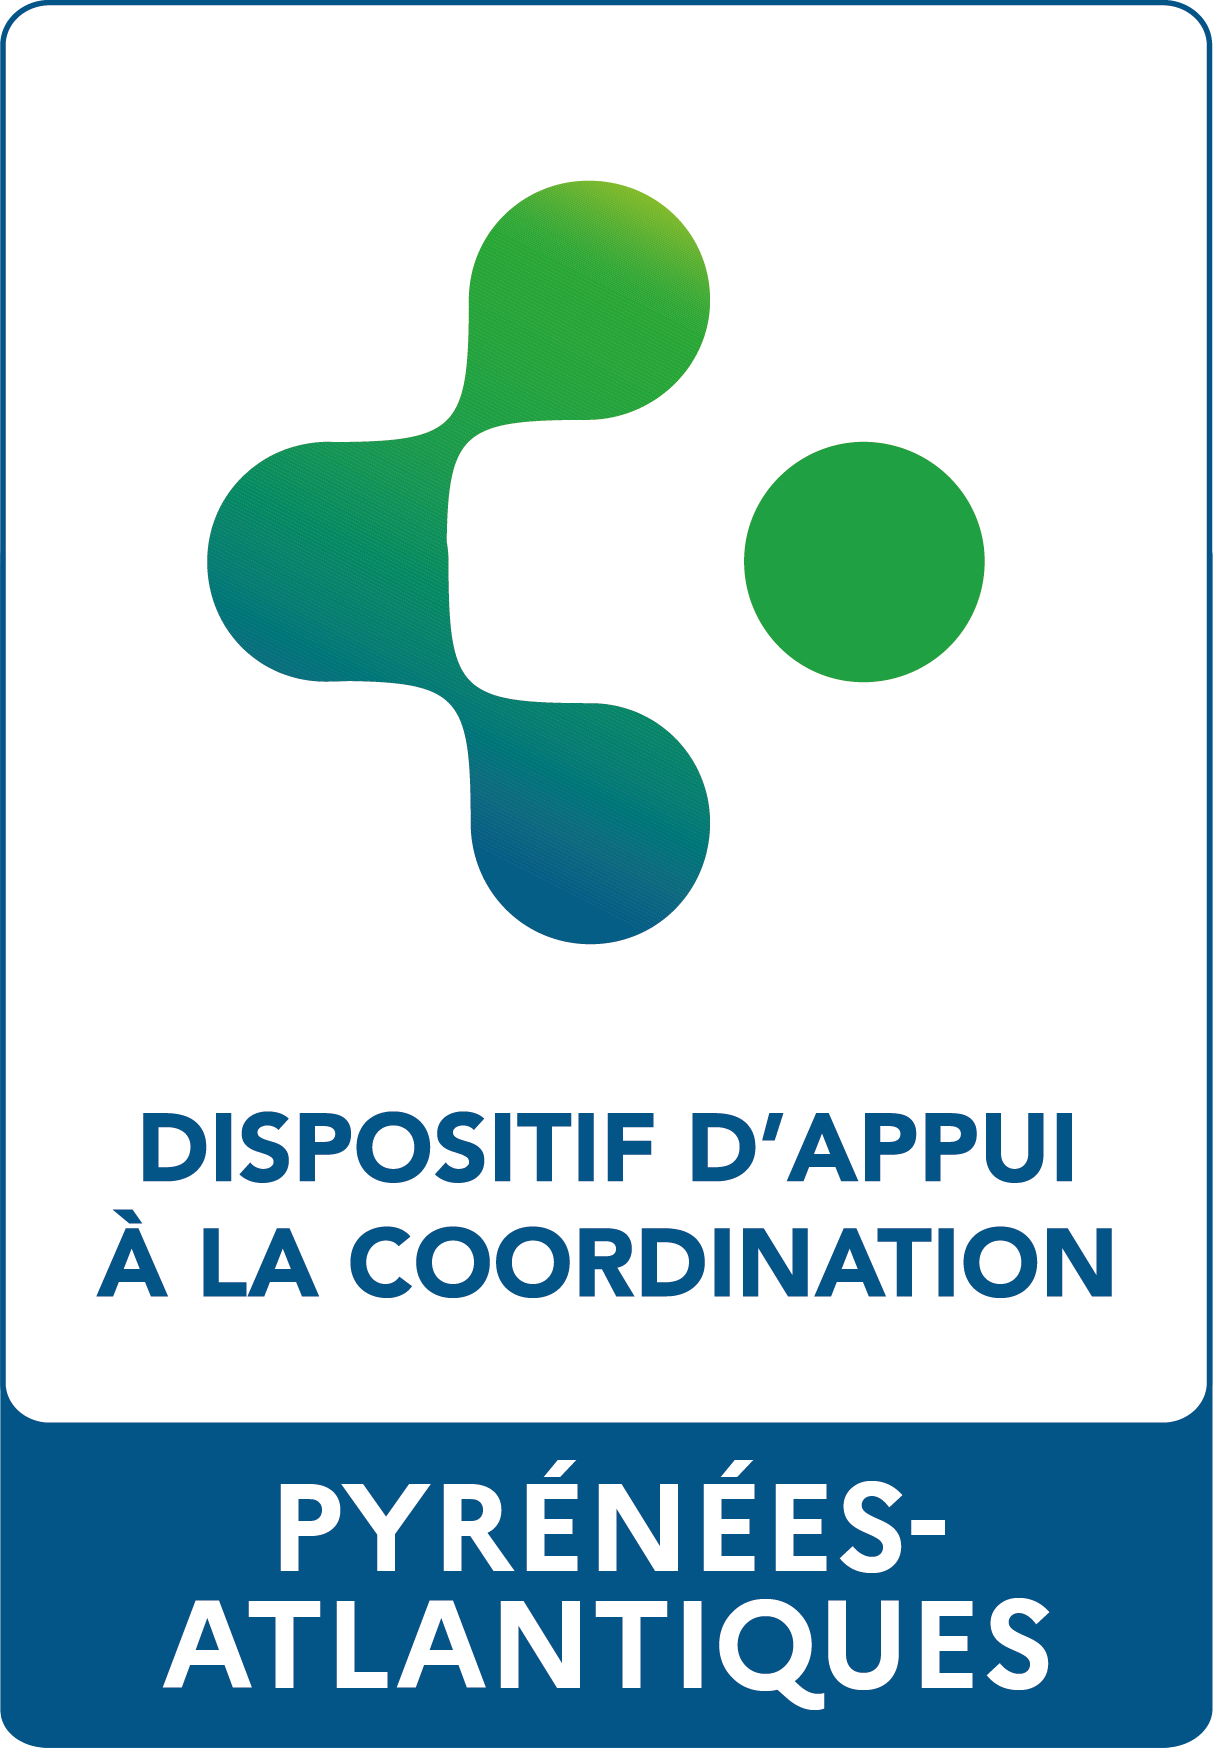 Logo PTA + DAC 64